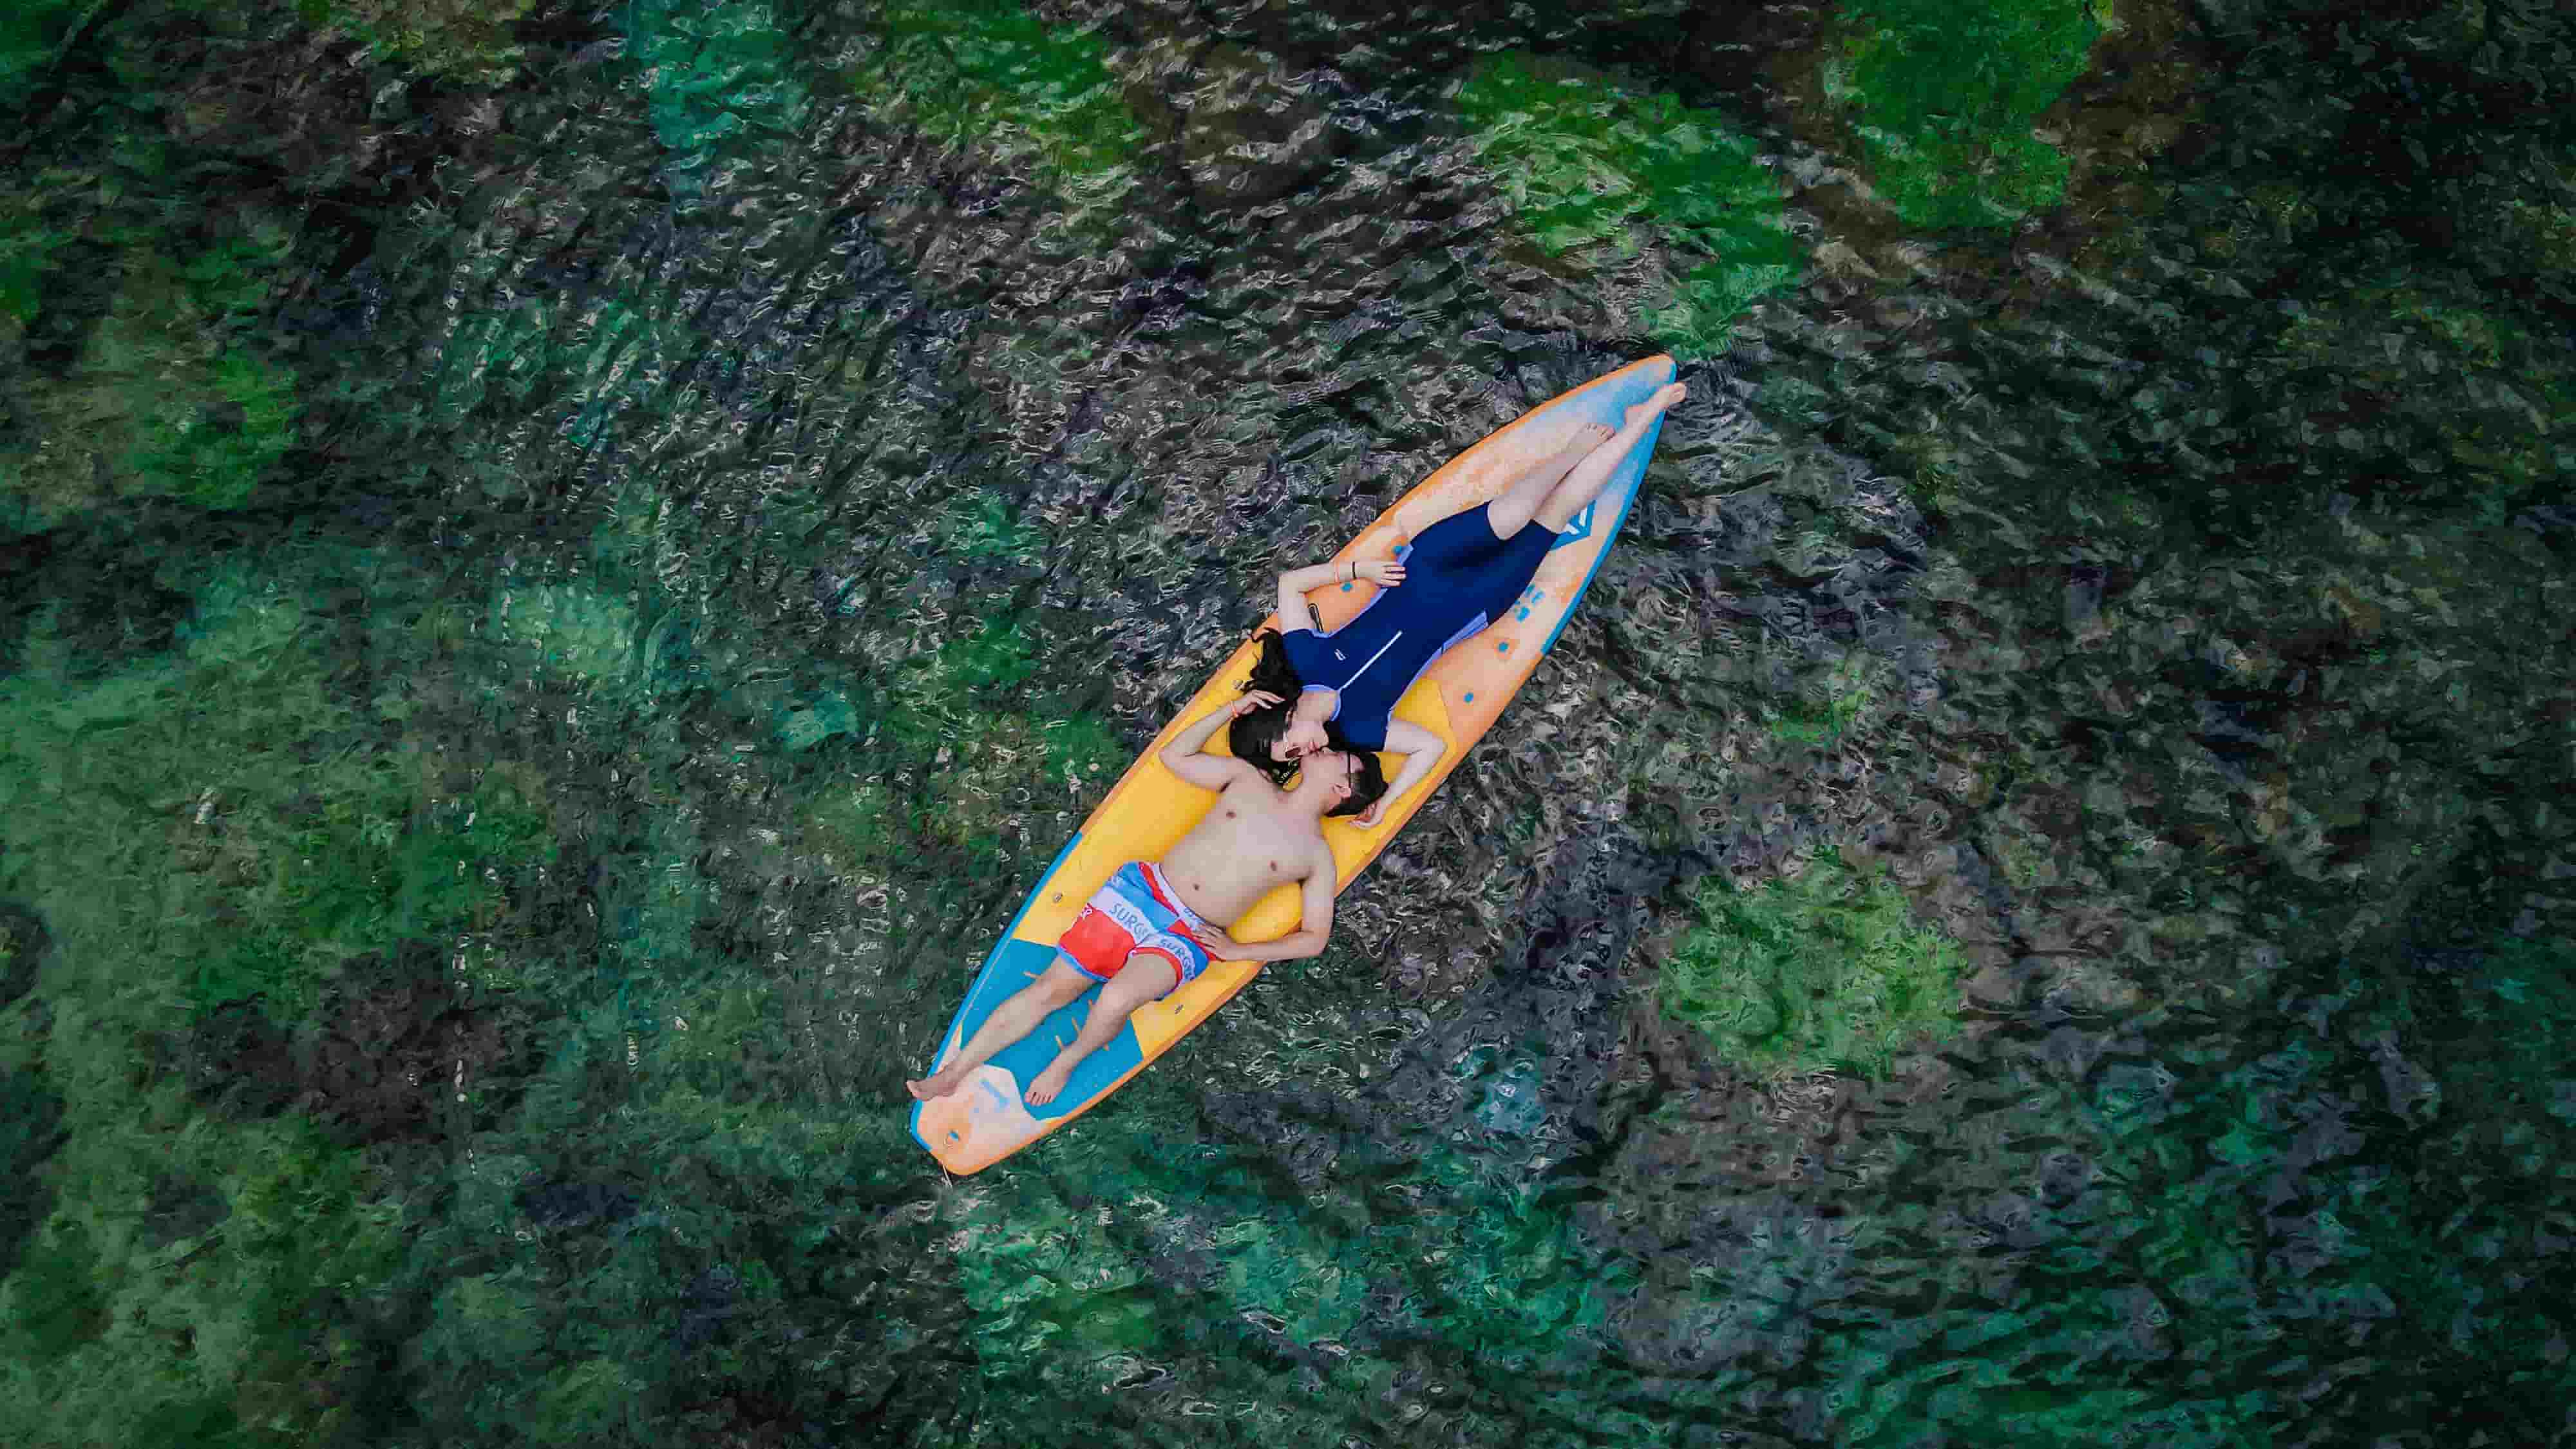 Chụp flycam với ván SUP xanh luôn được bao gồm trong tour cano 4 đảo Phú Quốc tại Sun Việt Travel